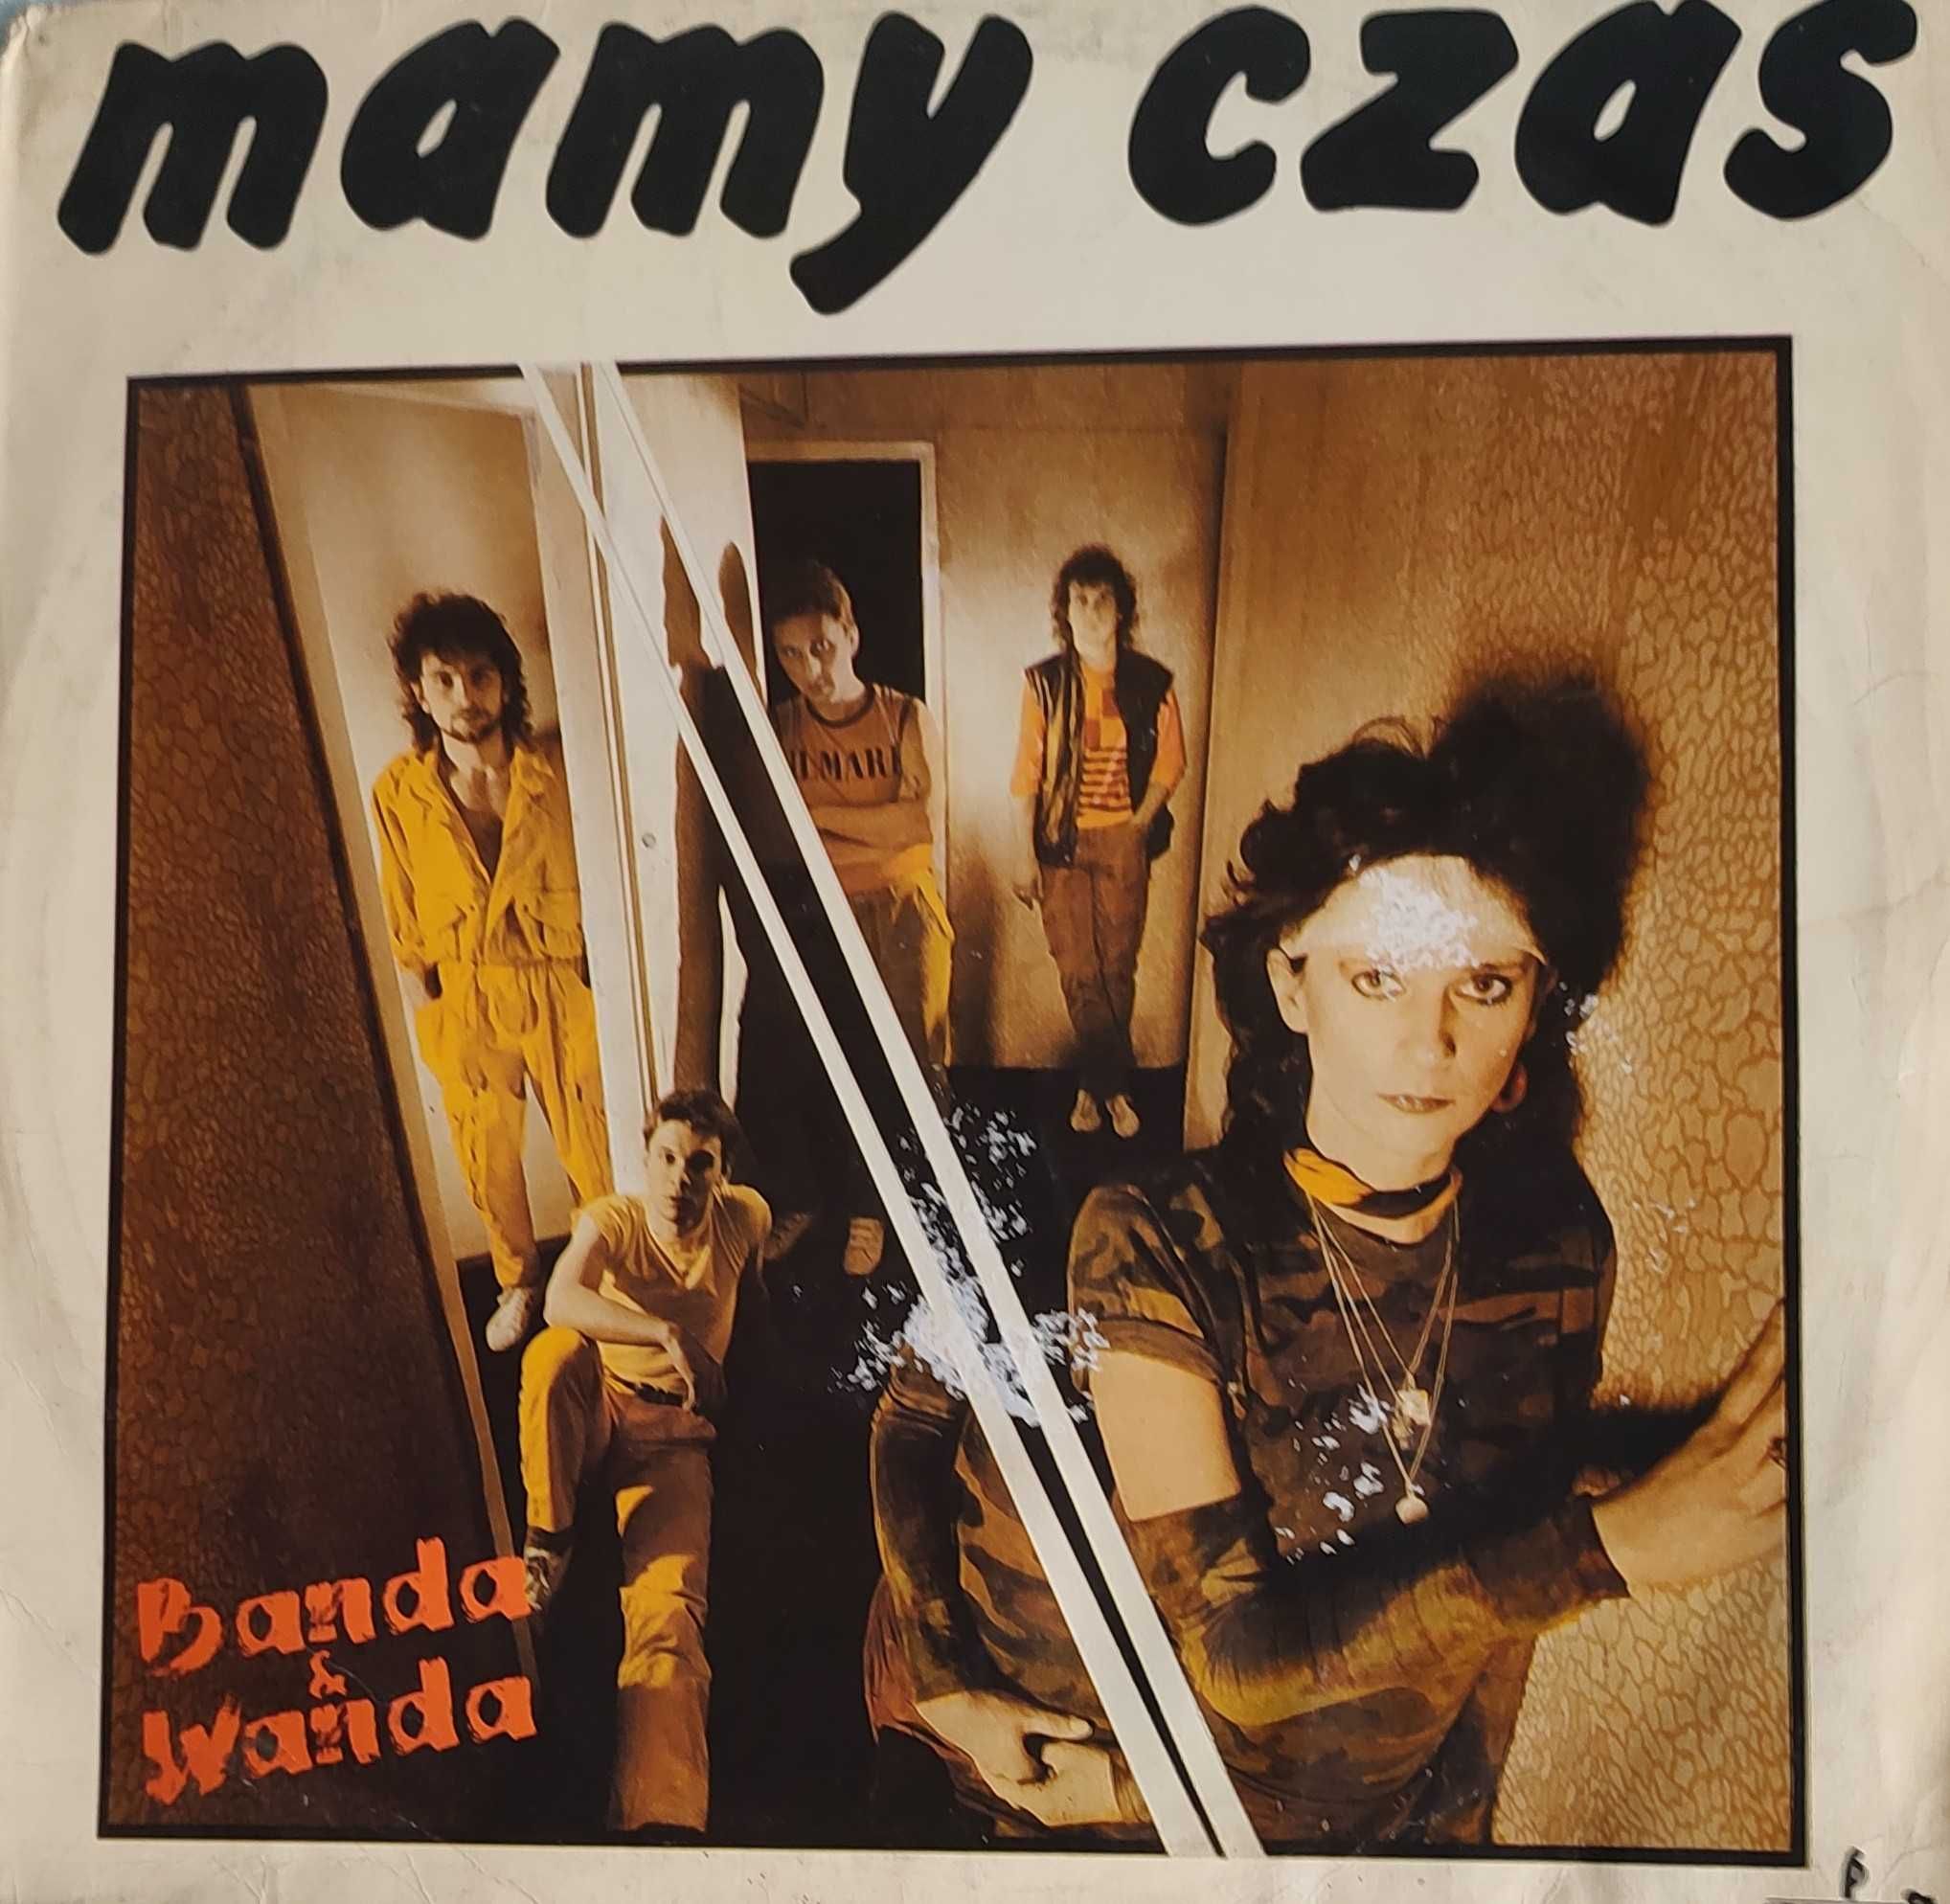 Płyta zespołu Banda i Wanda "Mamy czas". Winyl